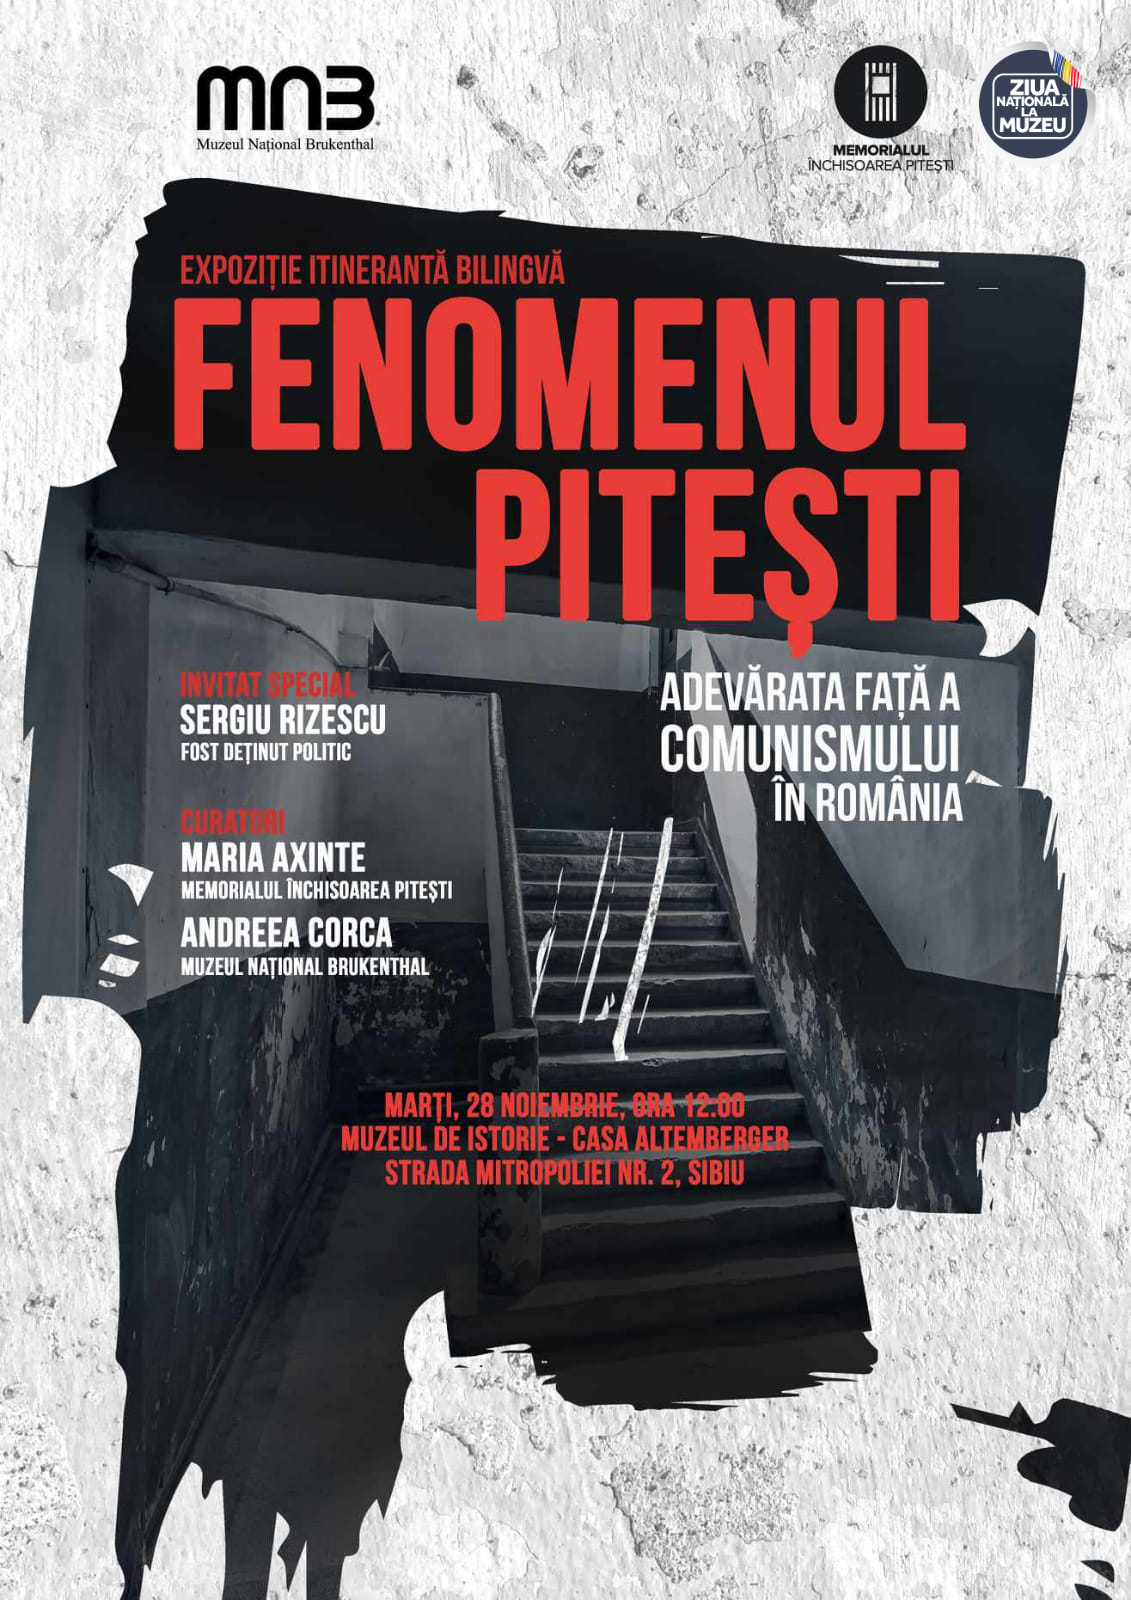  Exhibition “PITEȘTI PHENOMENON. THE TRUE FACE OF COMMUNISM IN ROMANIA”